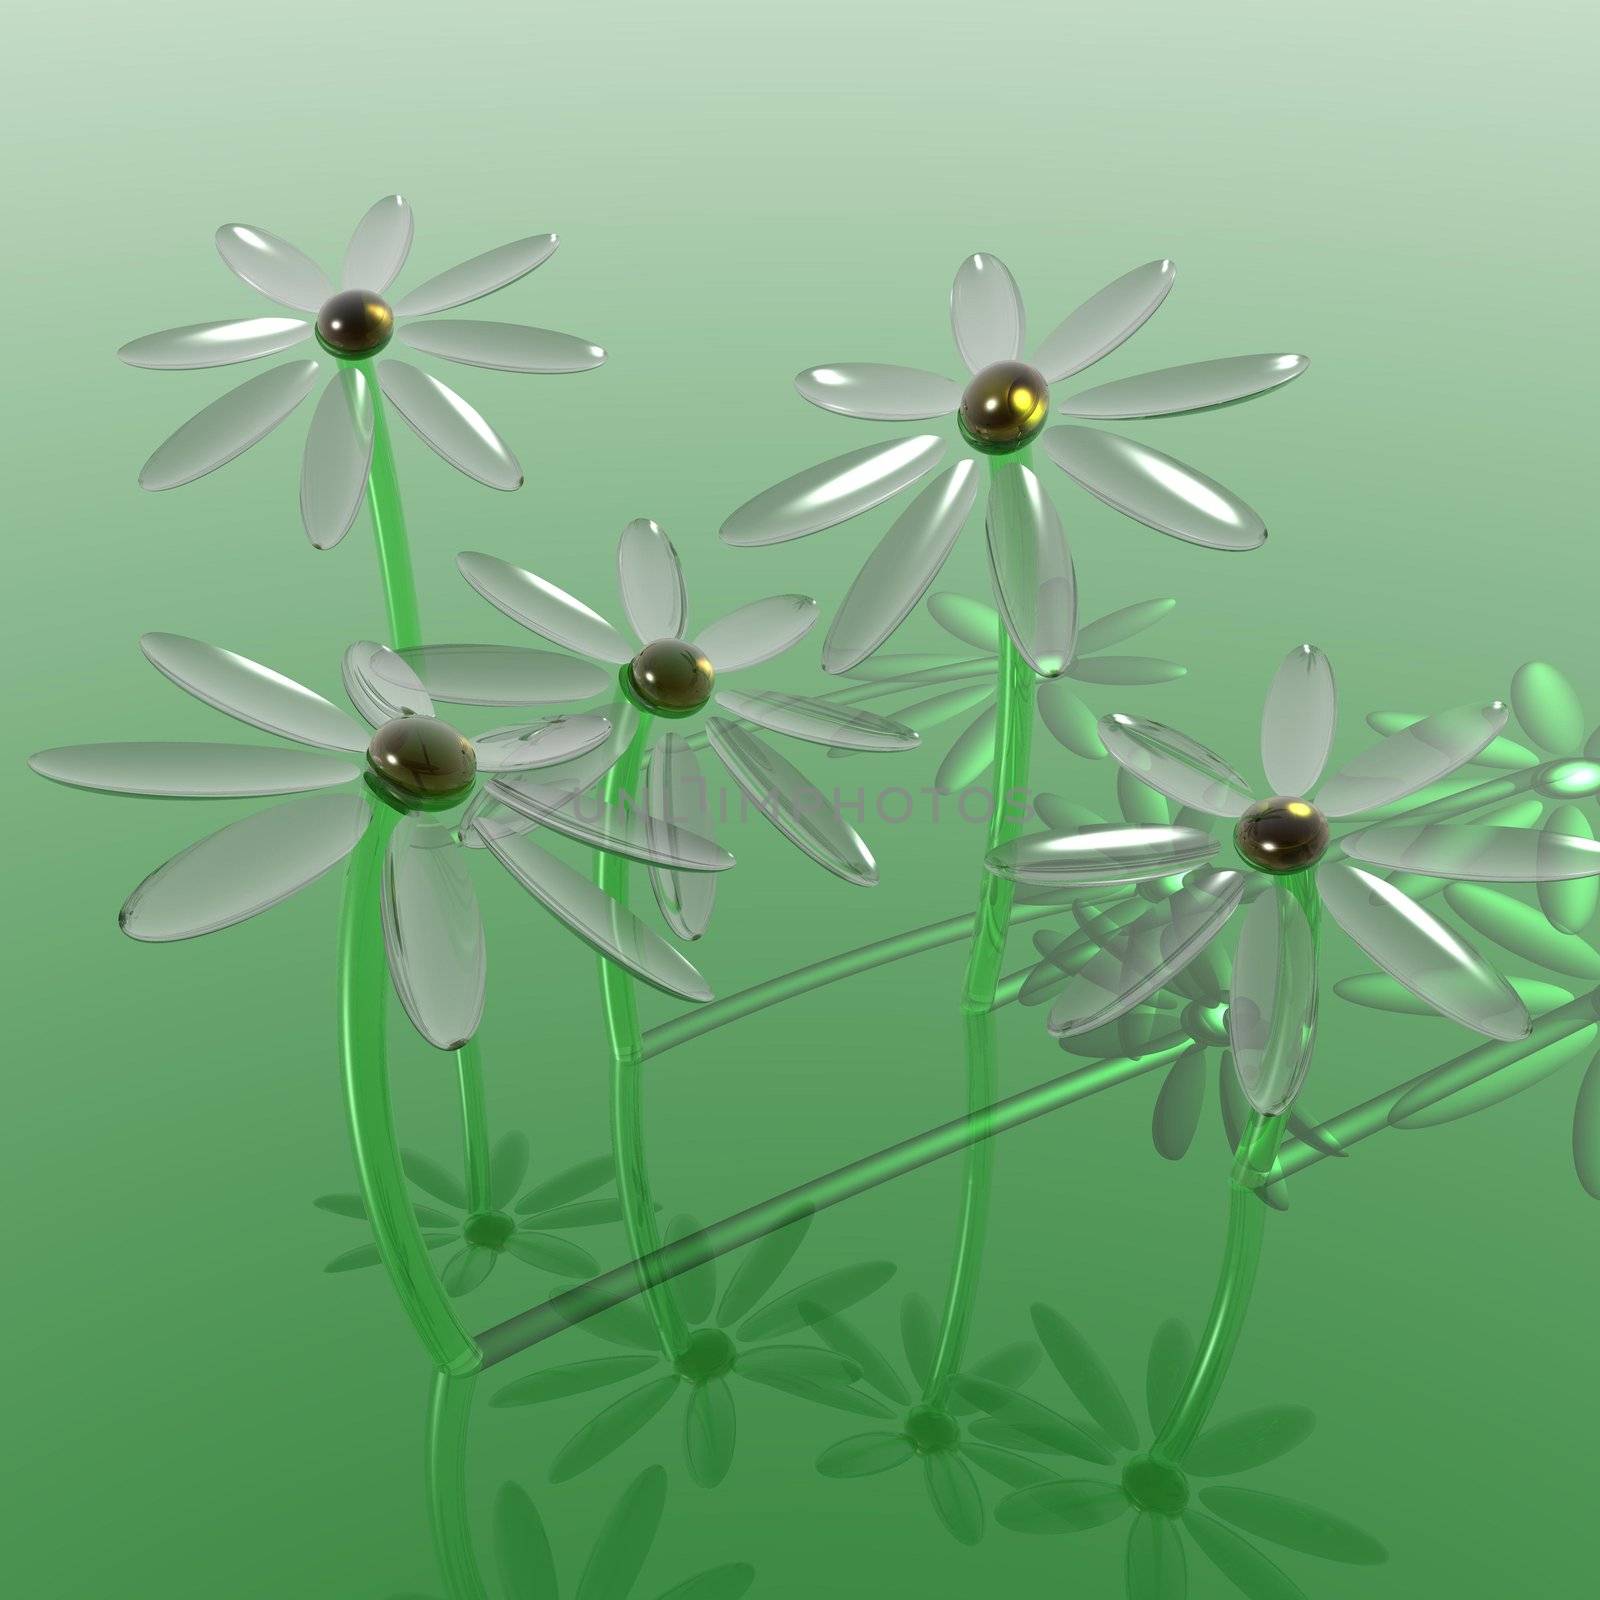 Glass daisies grown inside a virtual world